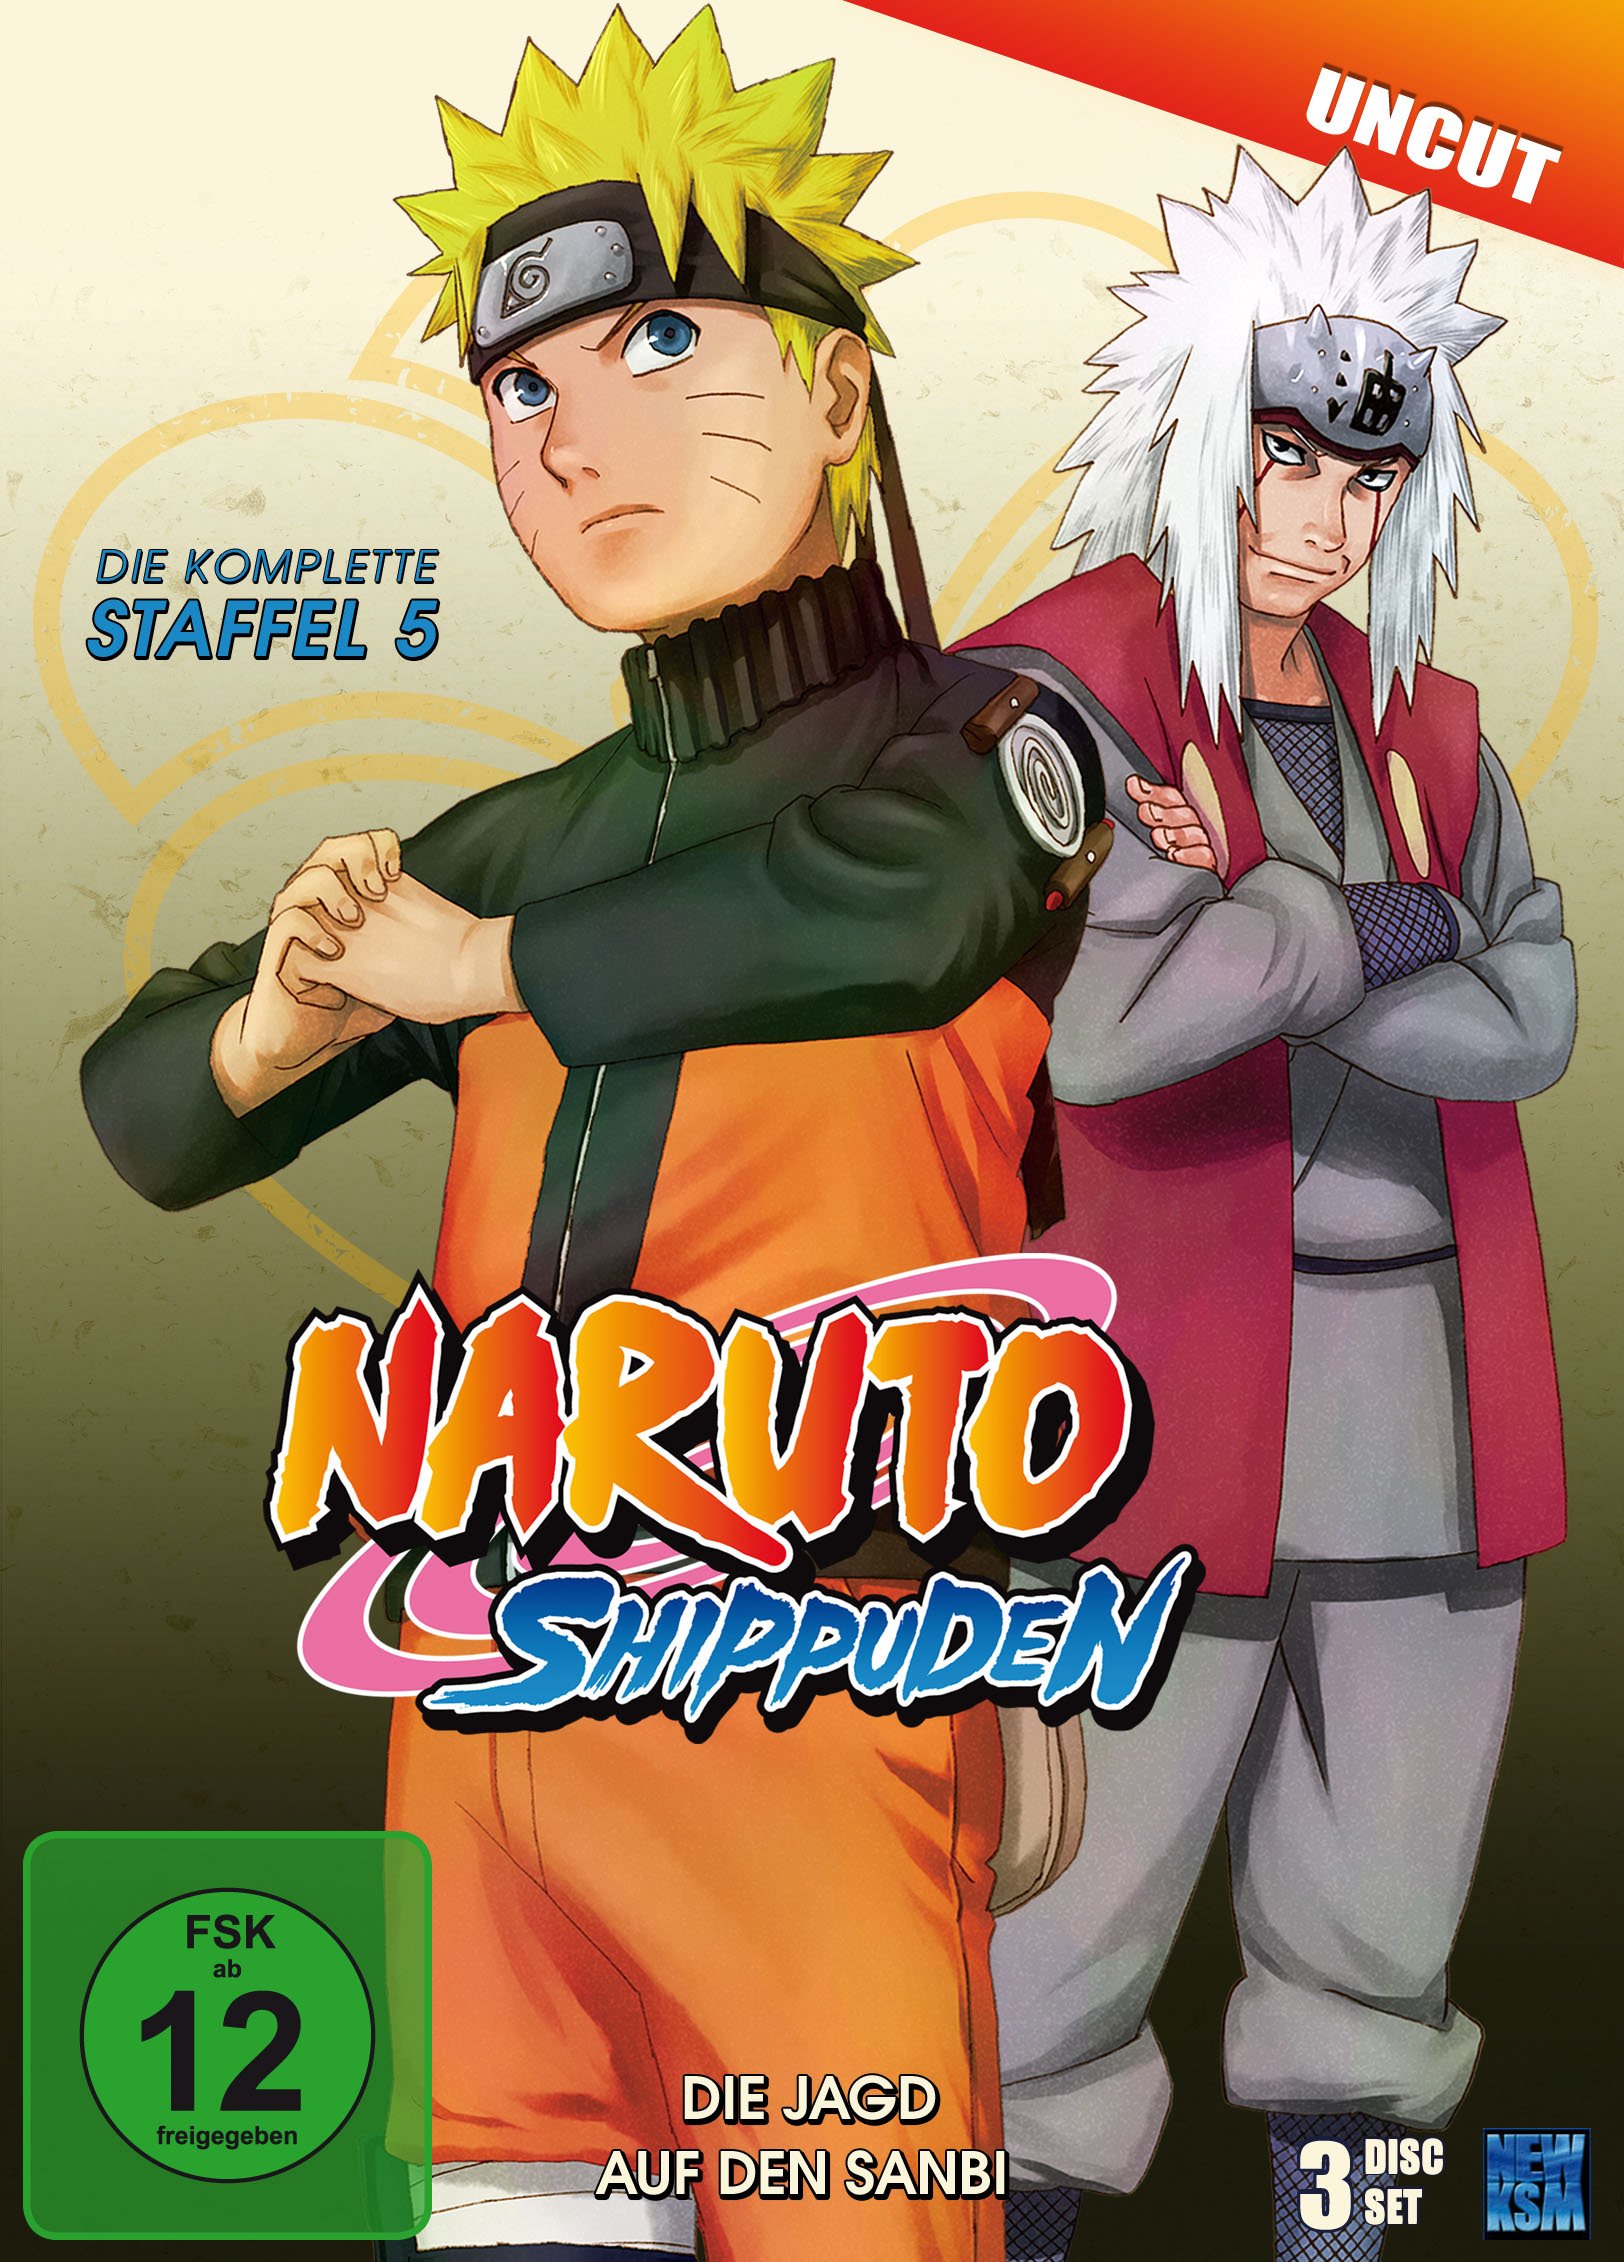 Naruto Shippuden, Staffel 5: Die Jagd auf den Sanbi (Episoden 309-332, uncut [3 DVDs]